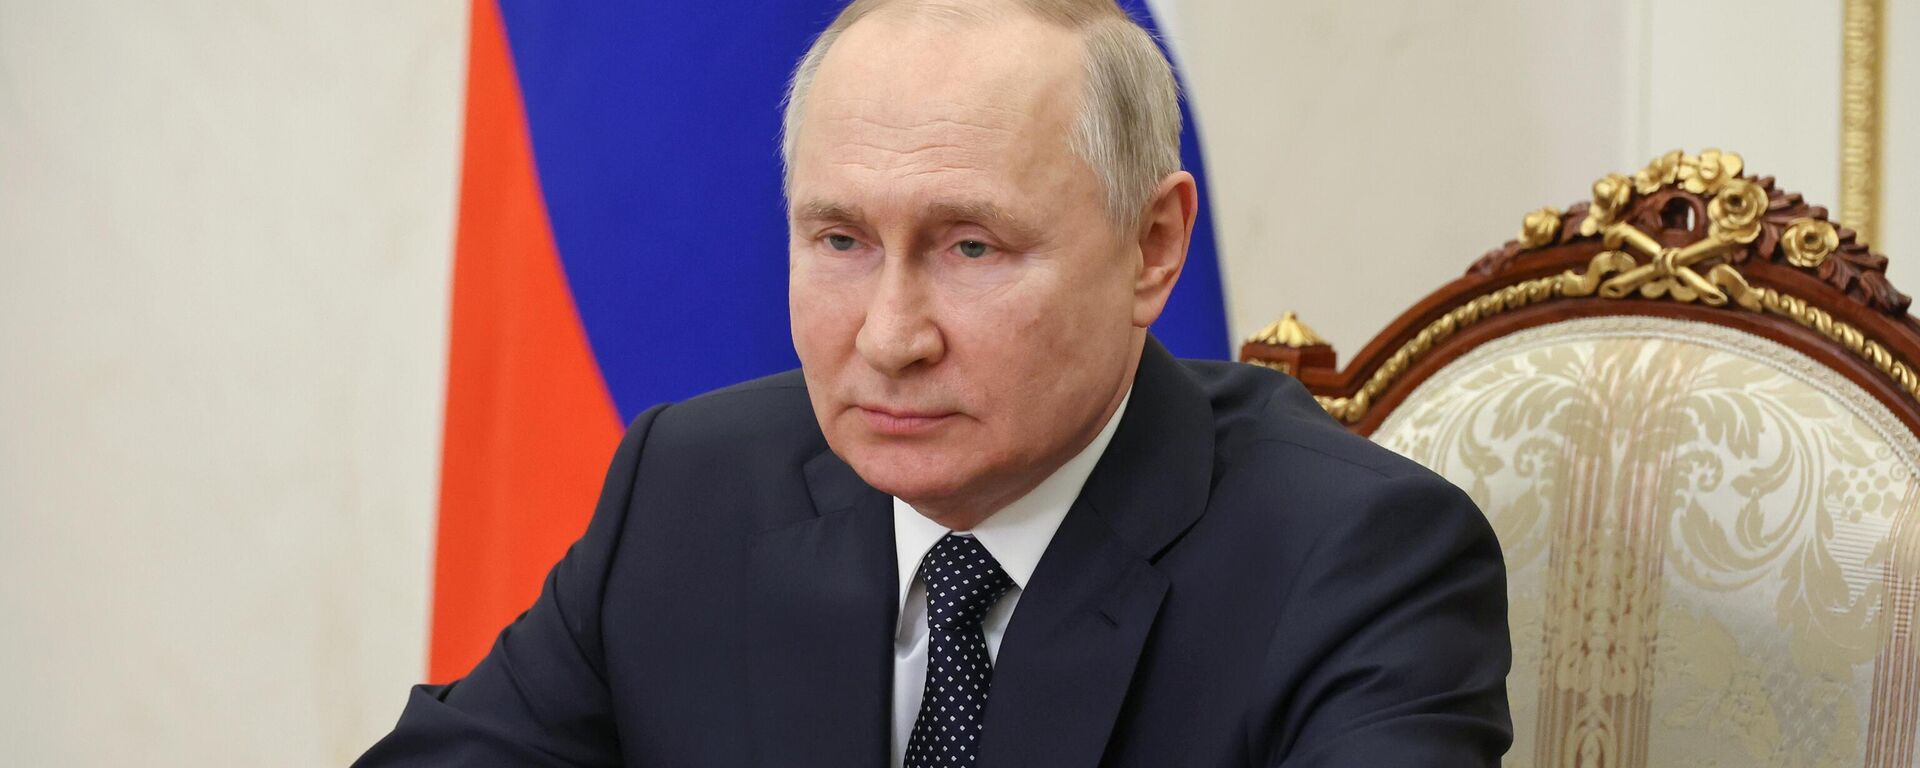 Vladimir Putin trong một bài phát biểu qua video gửi tới những người tham gia cuộc họp quốc tế của các đại diện cấp cao phụ trách các vấn đề an ninh đang diễn ra ở khu vực Matxcơva dưới sự bảo trợ của Hội đồng An ninh Liên bang Nga. - Sputnik Việt Nam, 1920, 30.05.2023